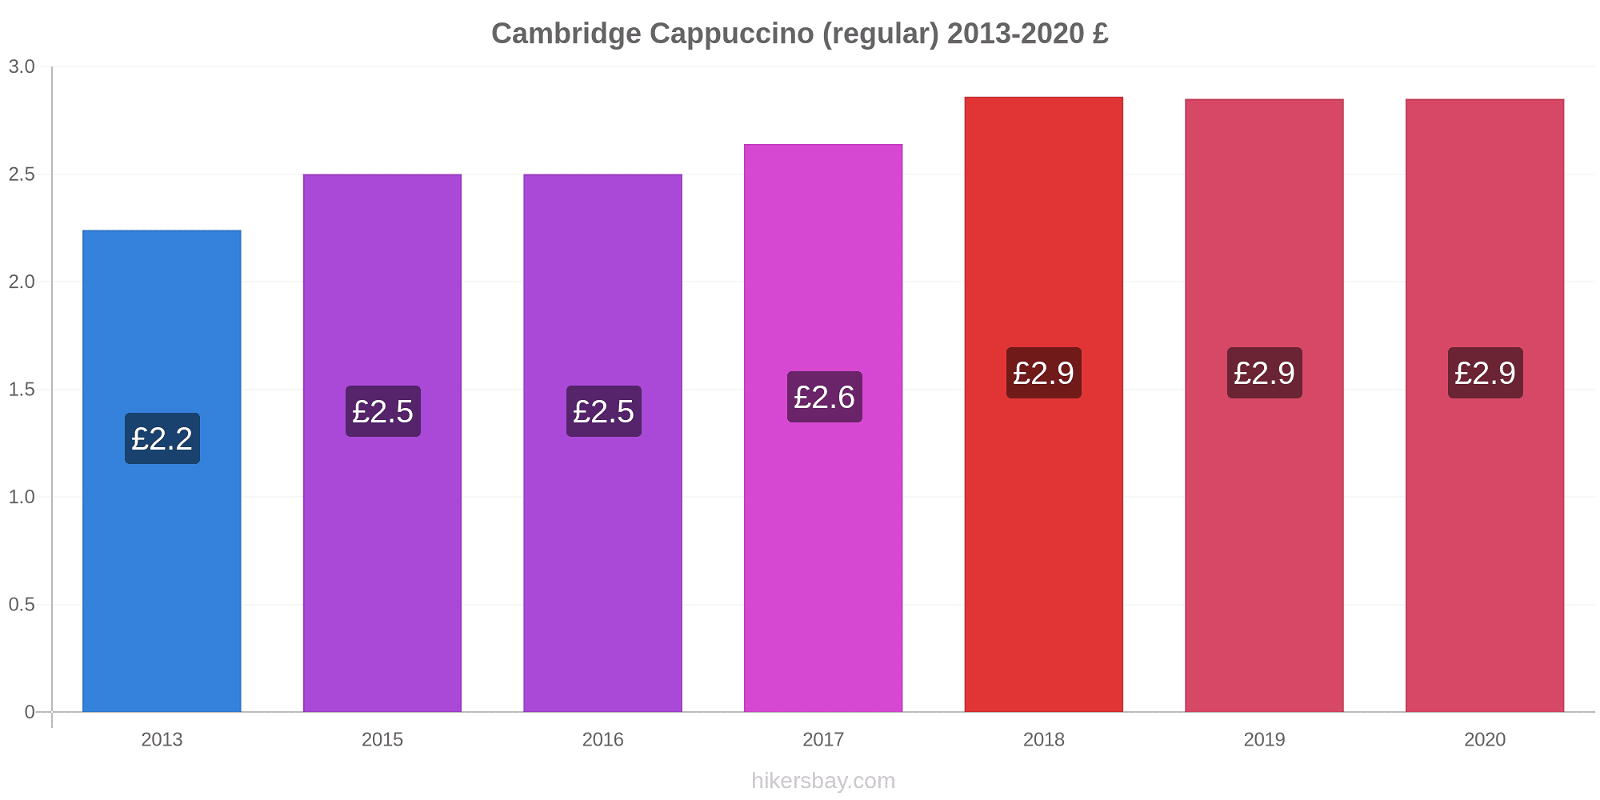 Cambridge price changes Cappuccino (regular) hikersbay.com